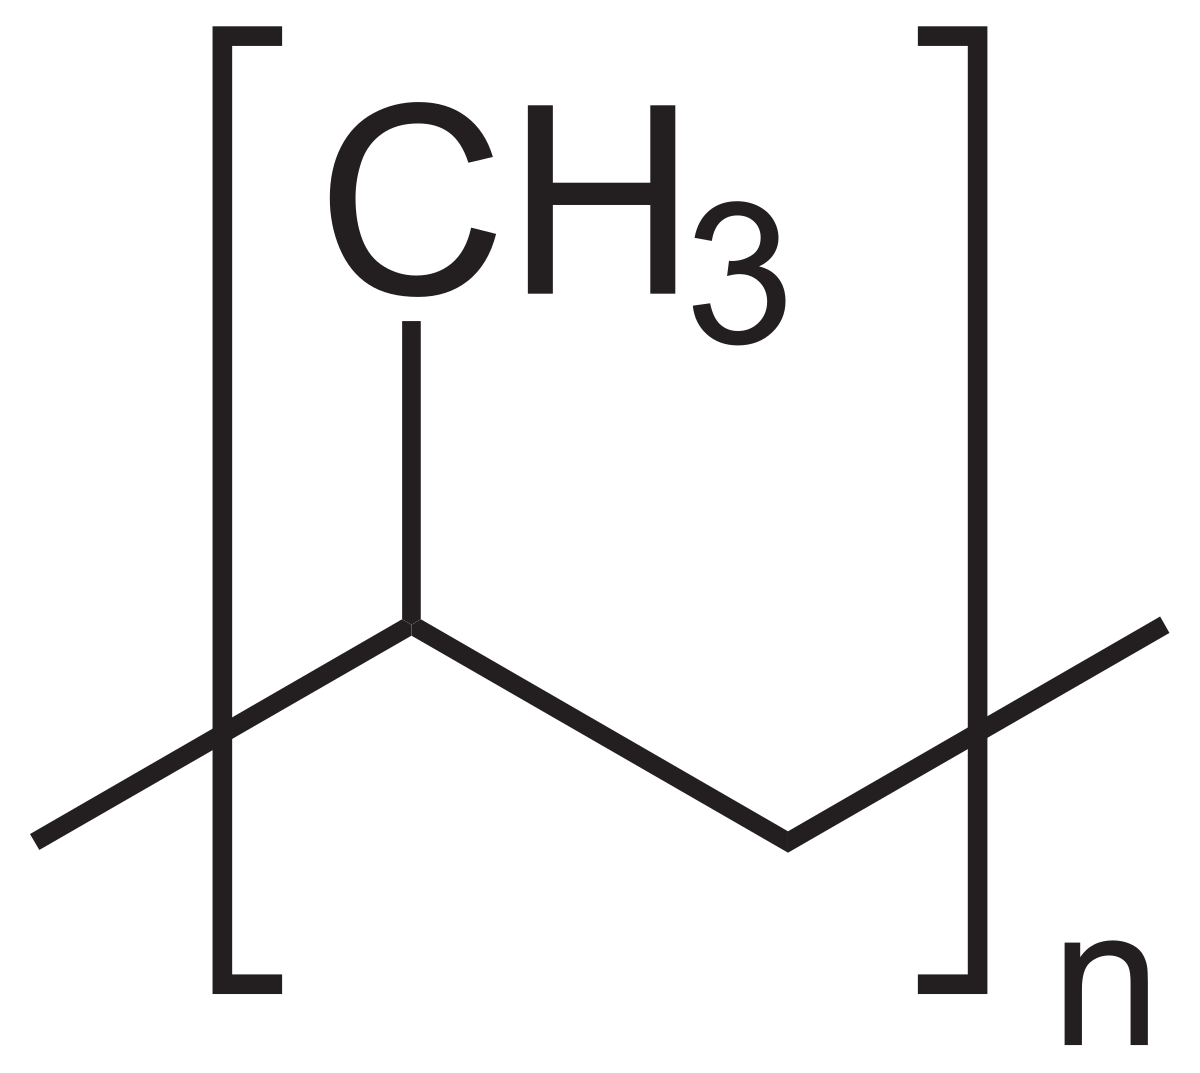 Polypropylène